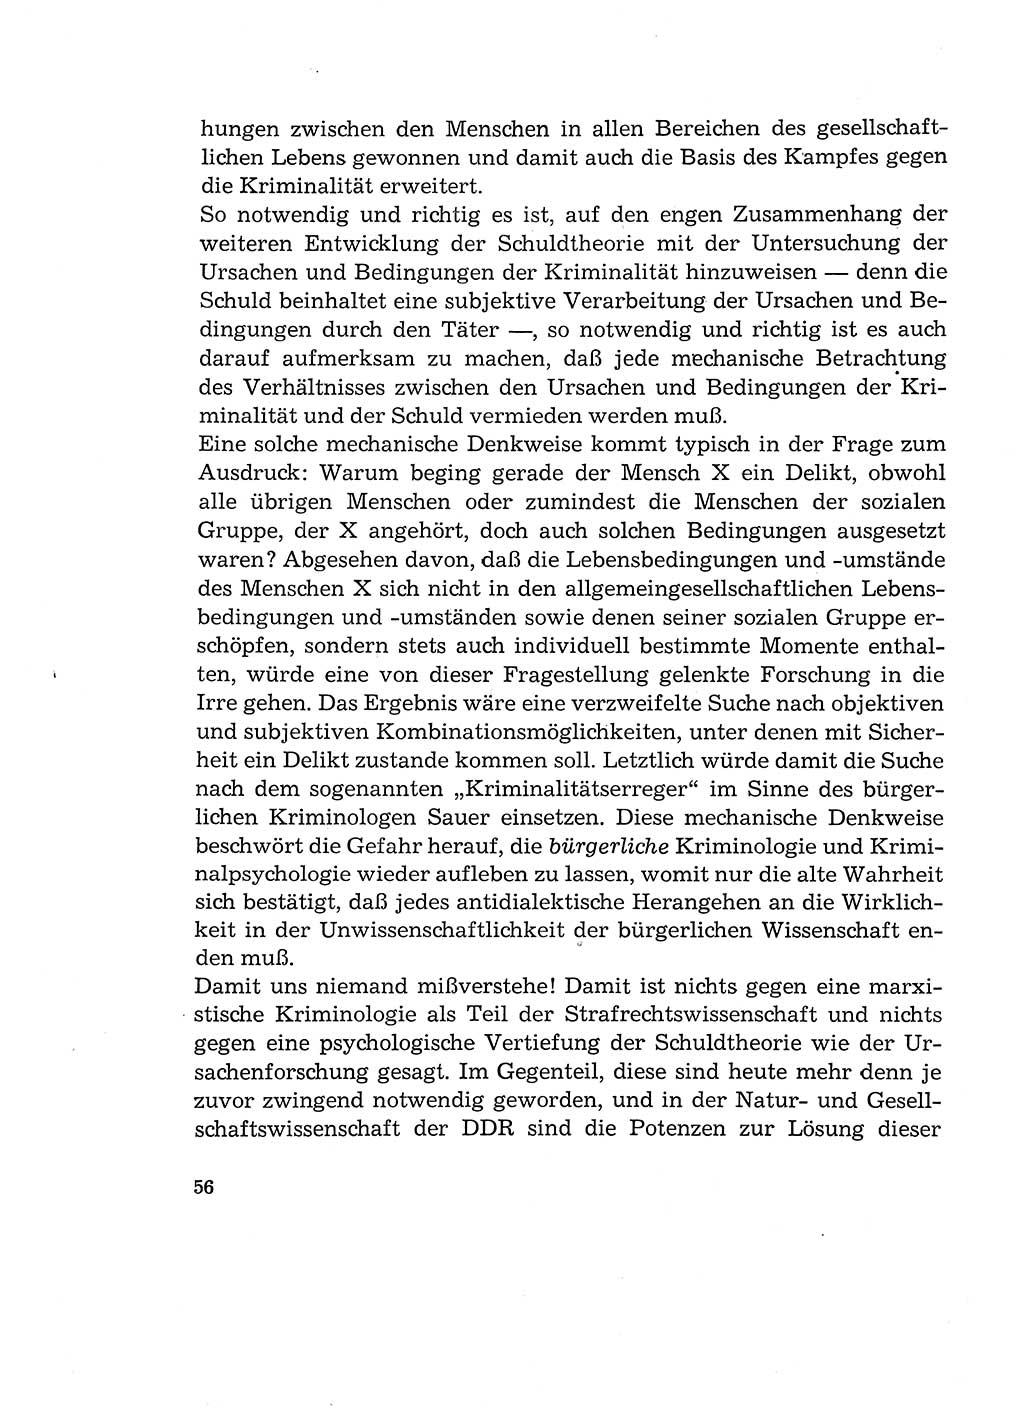 Verantwortung und Schuld im neuen Strafgesetzbuch (StGB) [Deutsche Demokratische Republik (DDR)] 1964, Seite 56 (Verantw. Sch. StGB DDR 1964, S. 56)